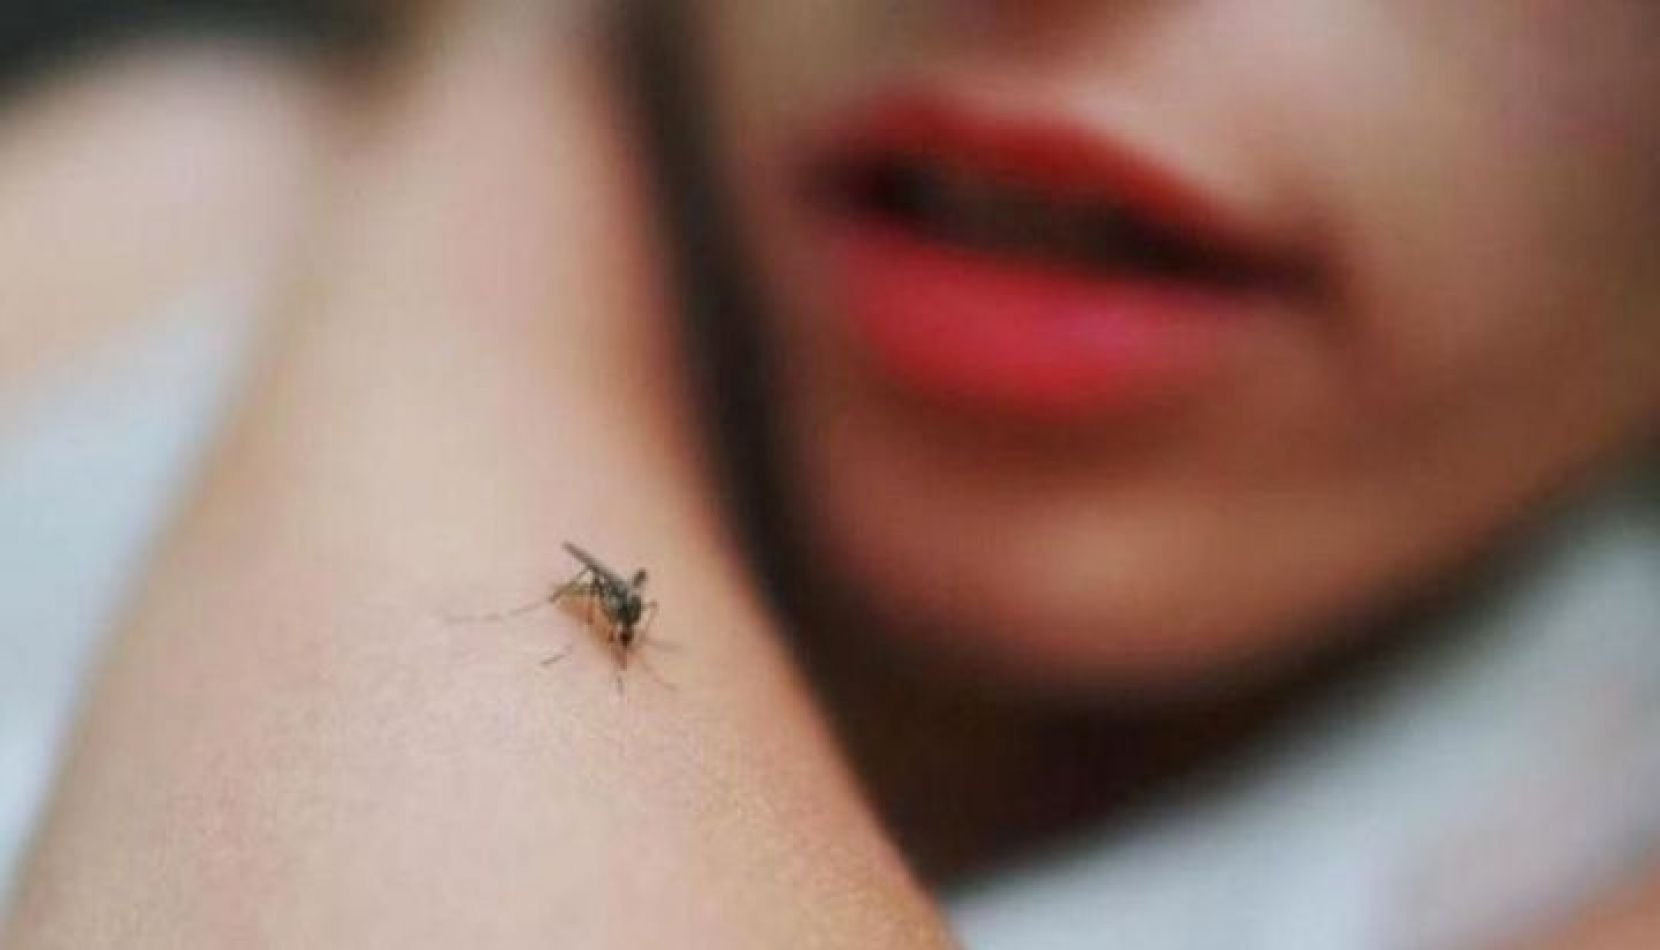 Alerta por un paciente con dengue hemorrágico en Cerrillos - Dengue - Ahora  Salta, Noticias en Salta, Argentina